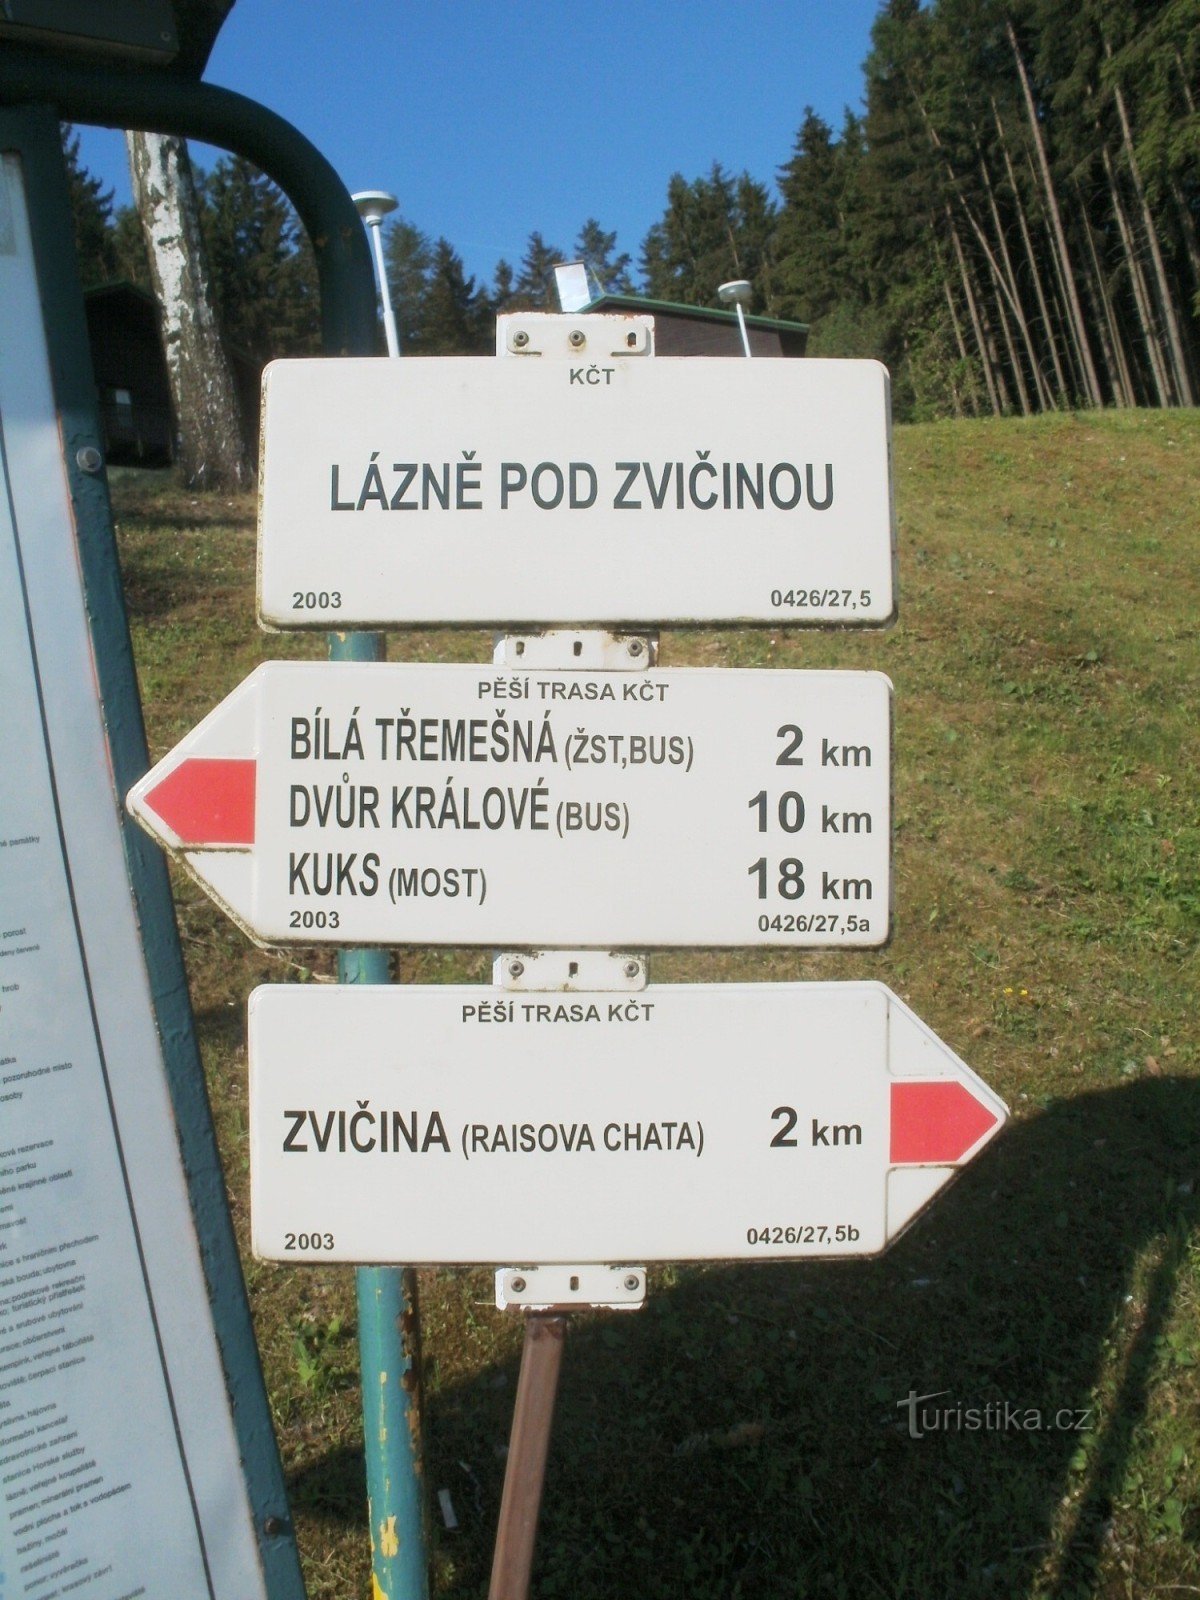 ngã tư du lịch của Lázně pod Zvičinou